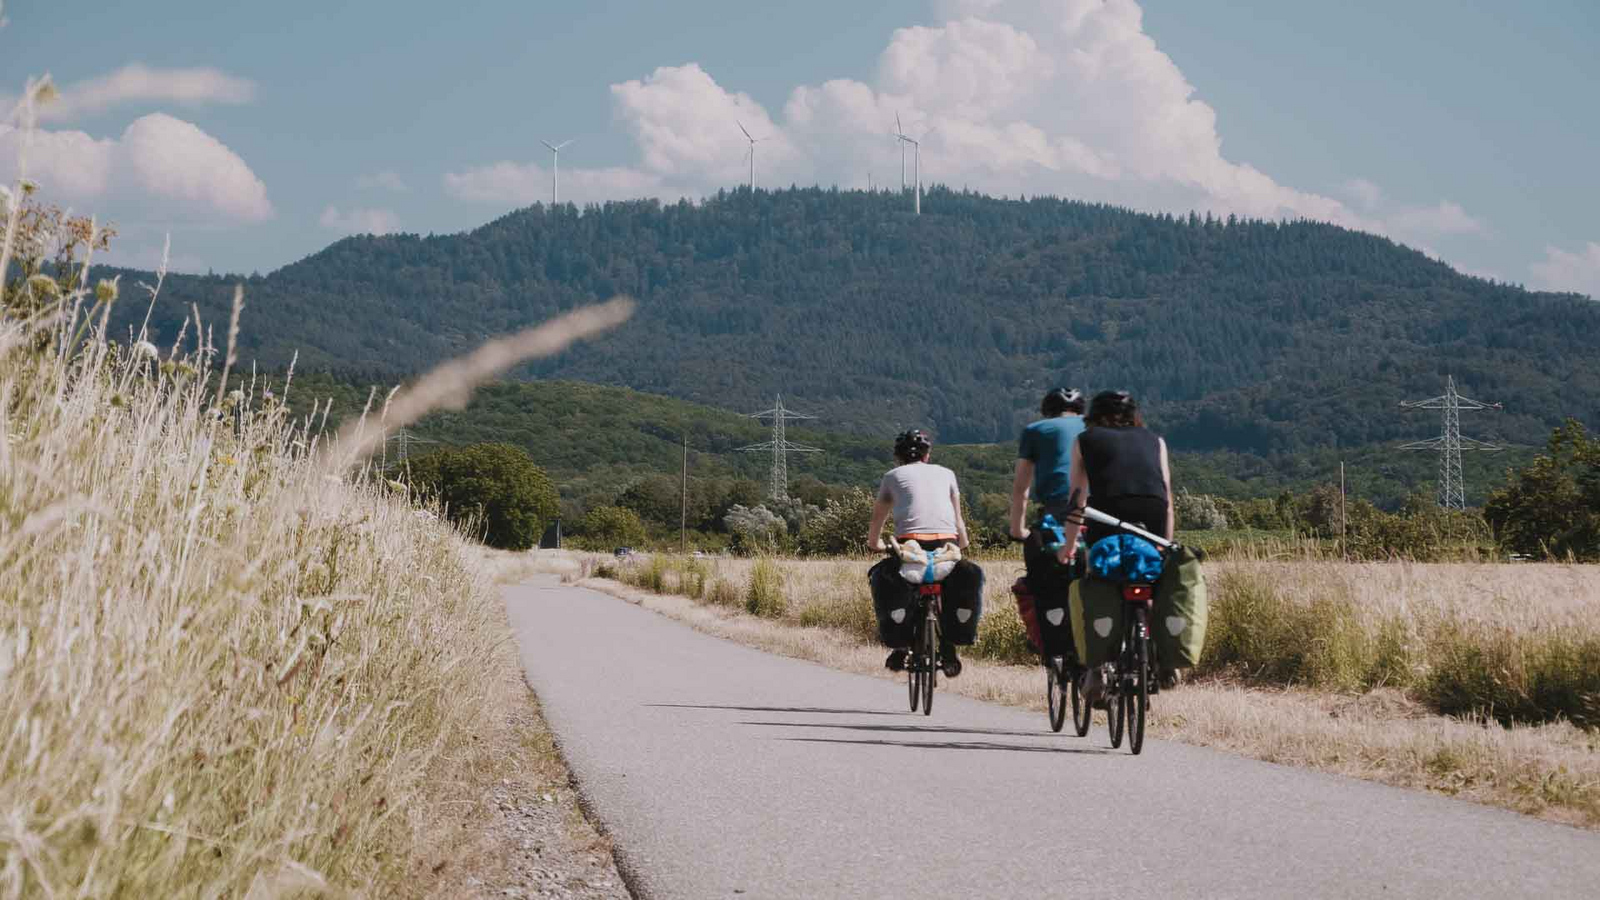 Filmteam auf radelt auf Landstraße durch Kornfelder im Hintergrund ein Schwarzwaldberg.